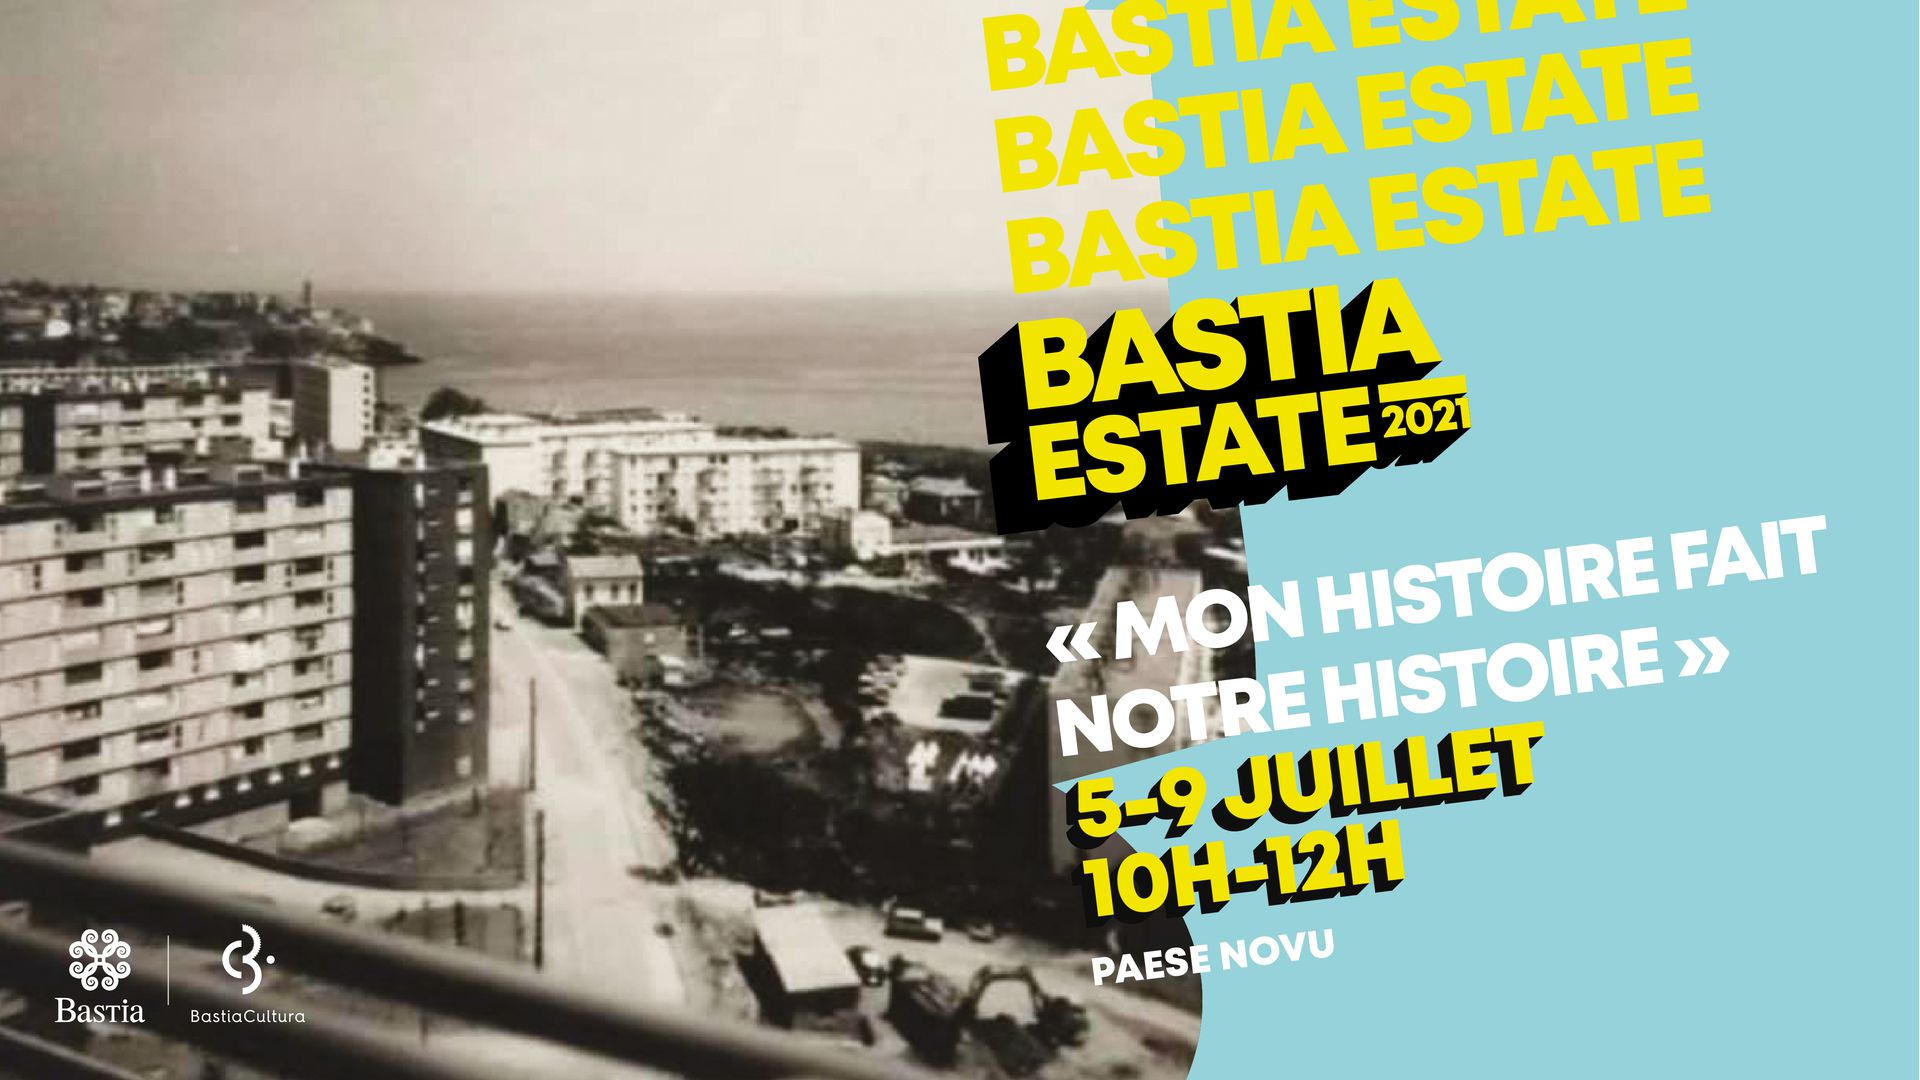 Bastia - "Mon histoire fait notre histoire" : une semaine d'ateliers à Paese Novu